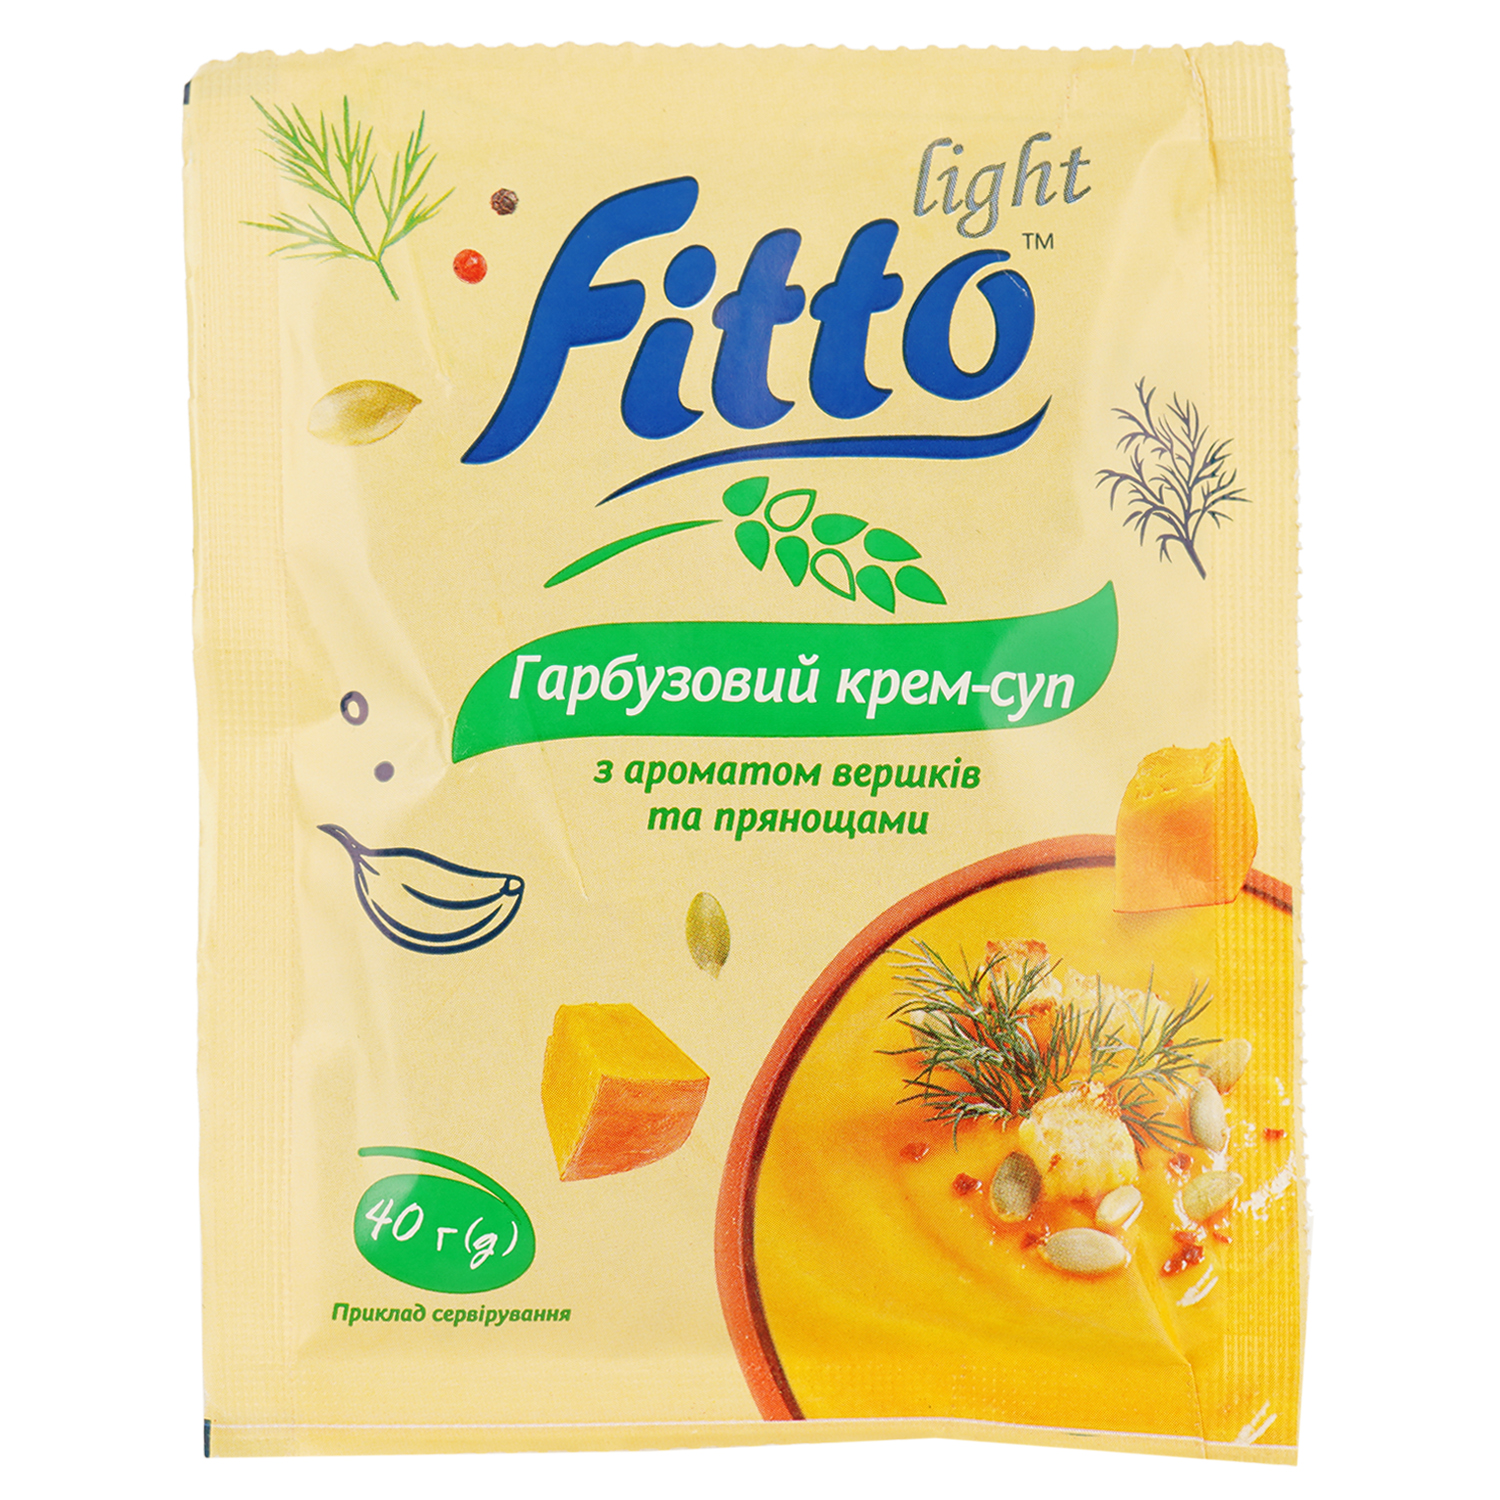 Крем-суп Fitto light тыквенный 40 г (915340) - фото 1